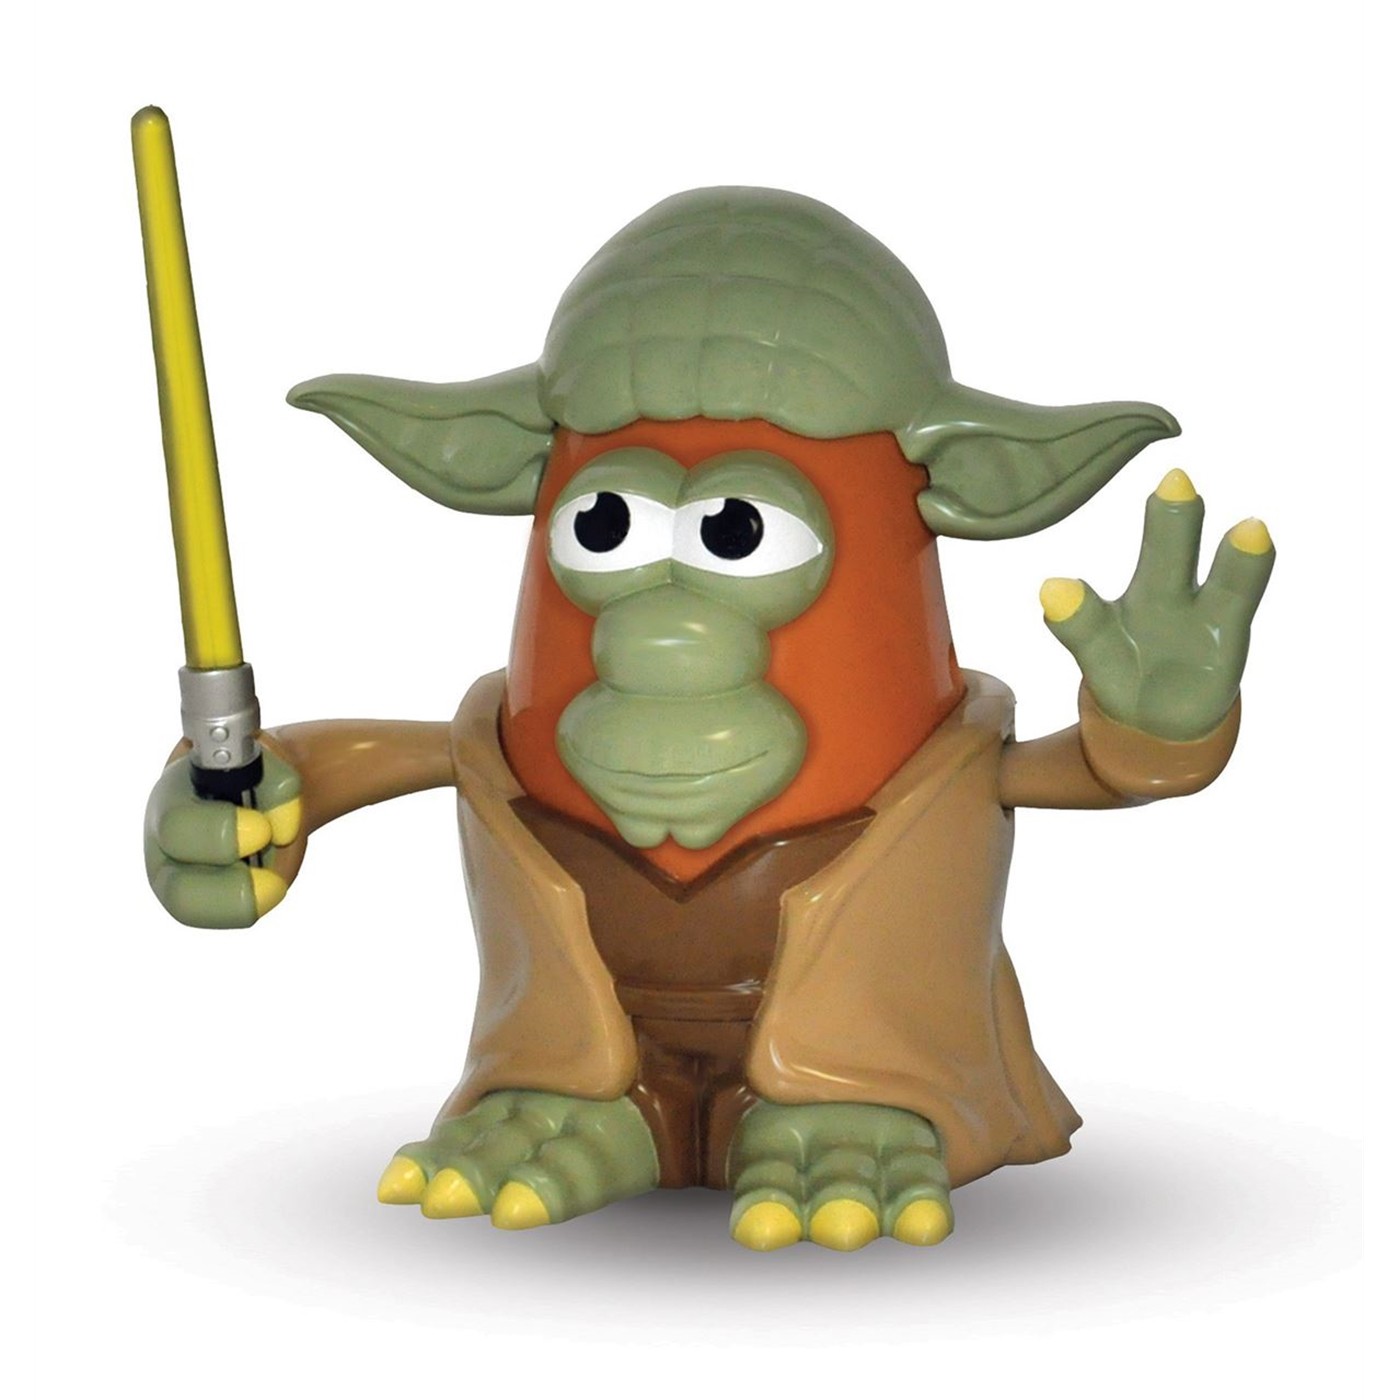 Star Wars Yoda Mr. Potato Head